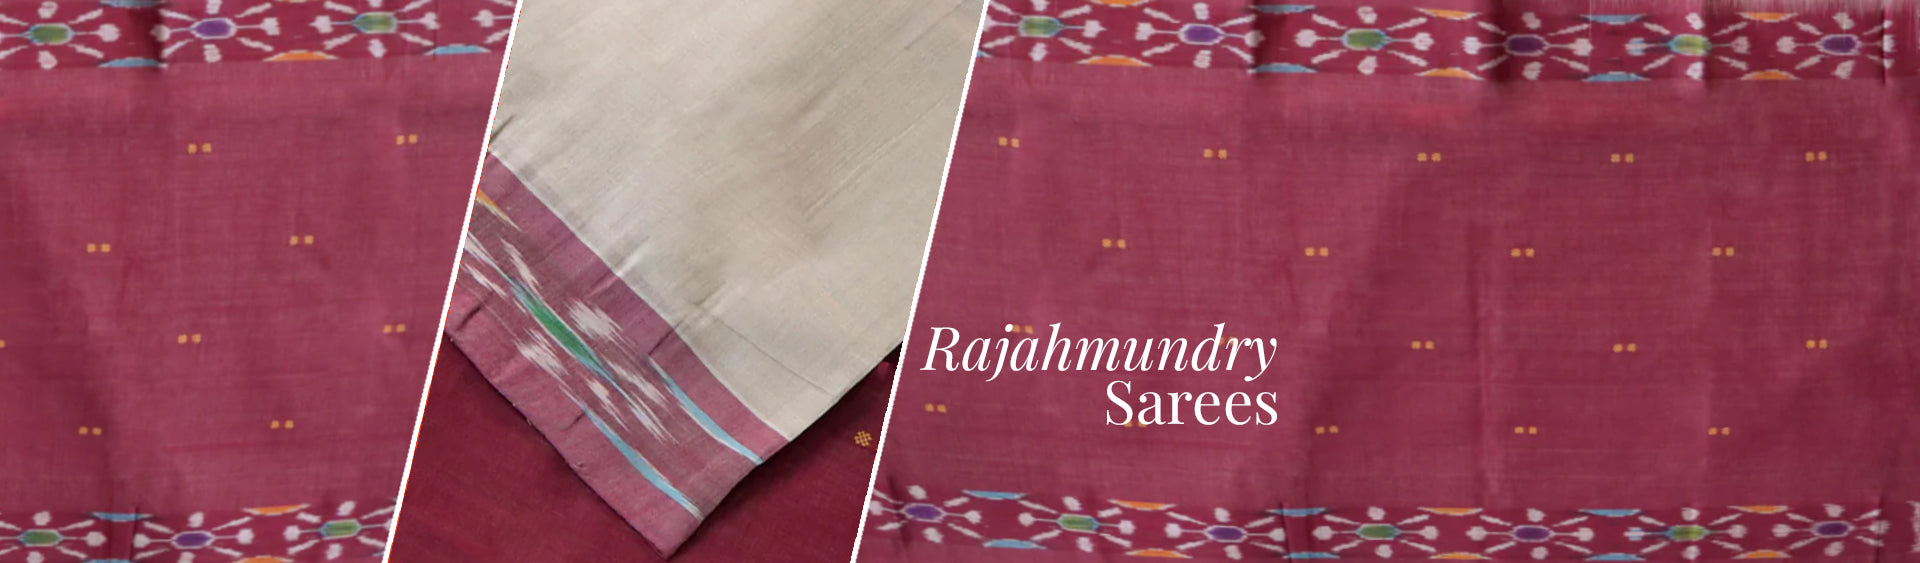 Rajahmundry sarees